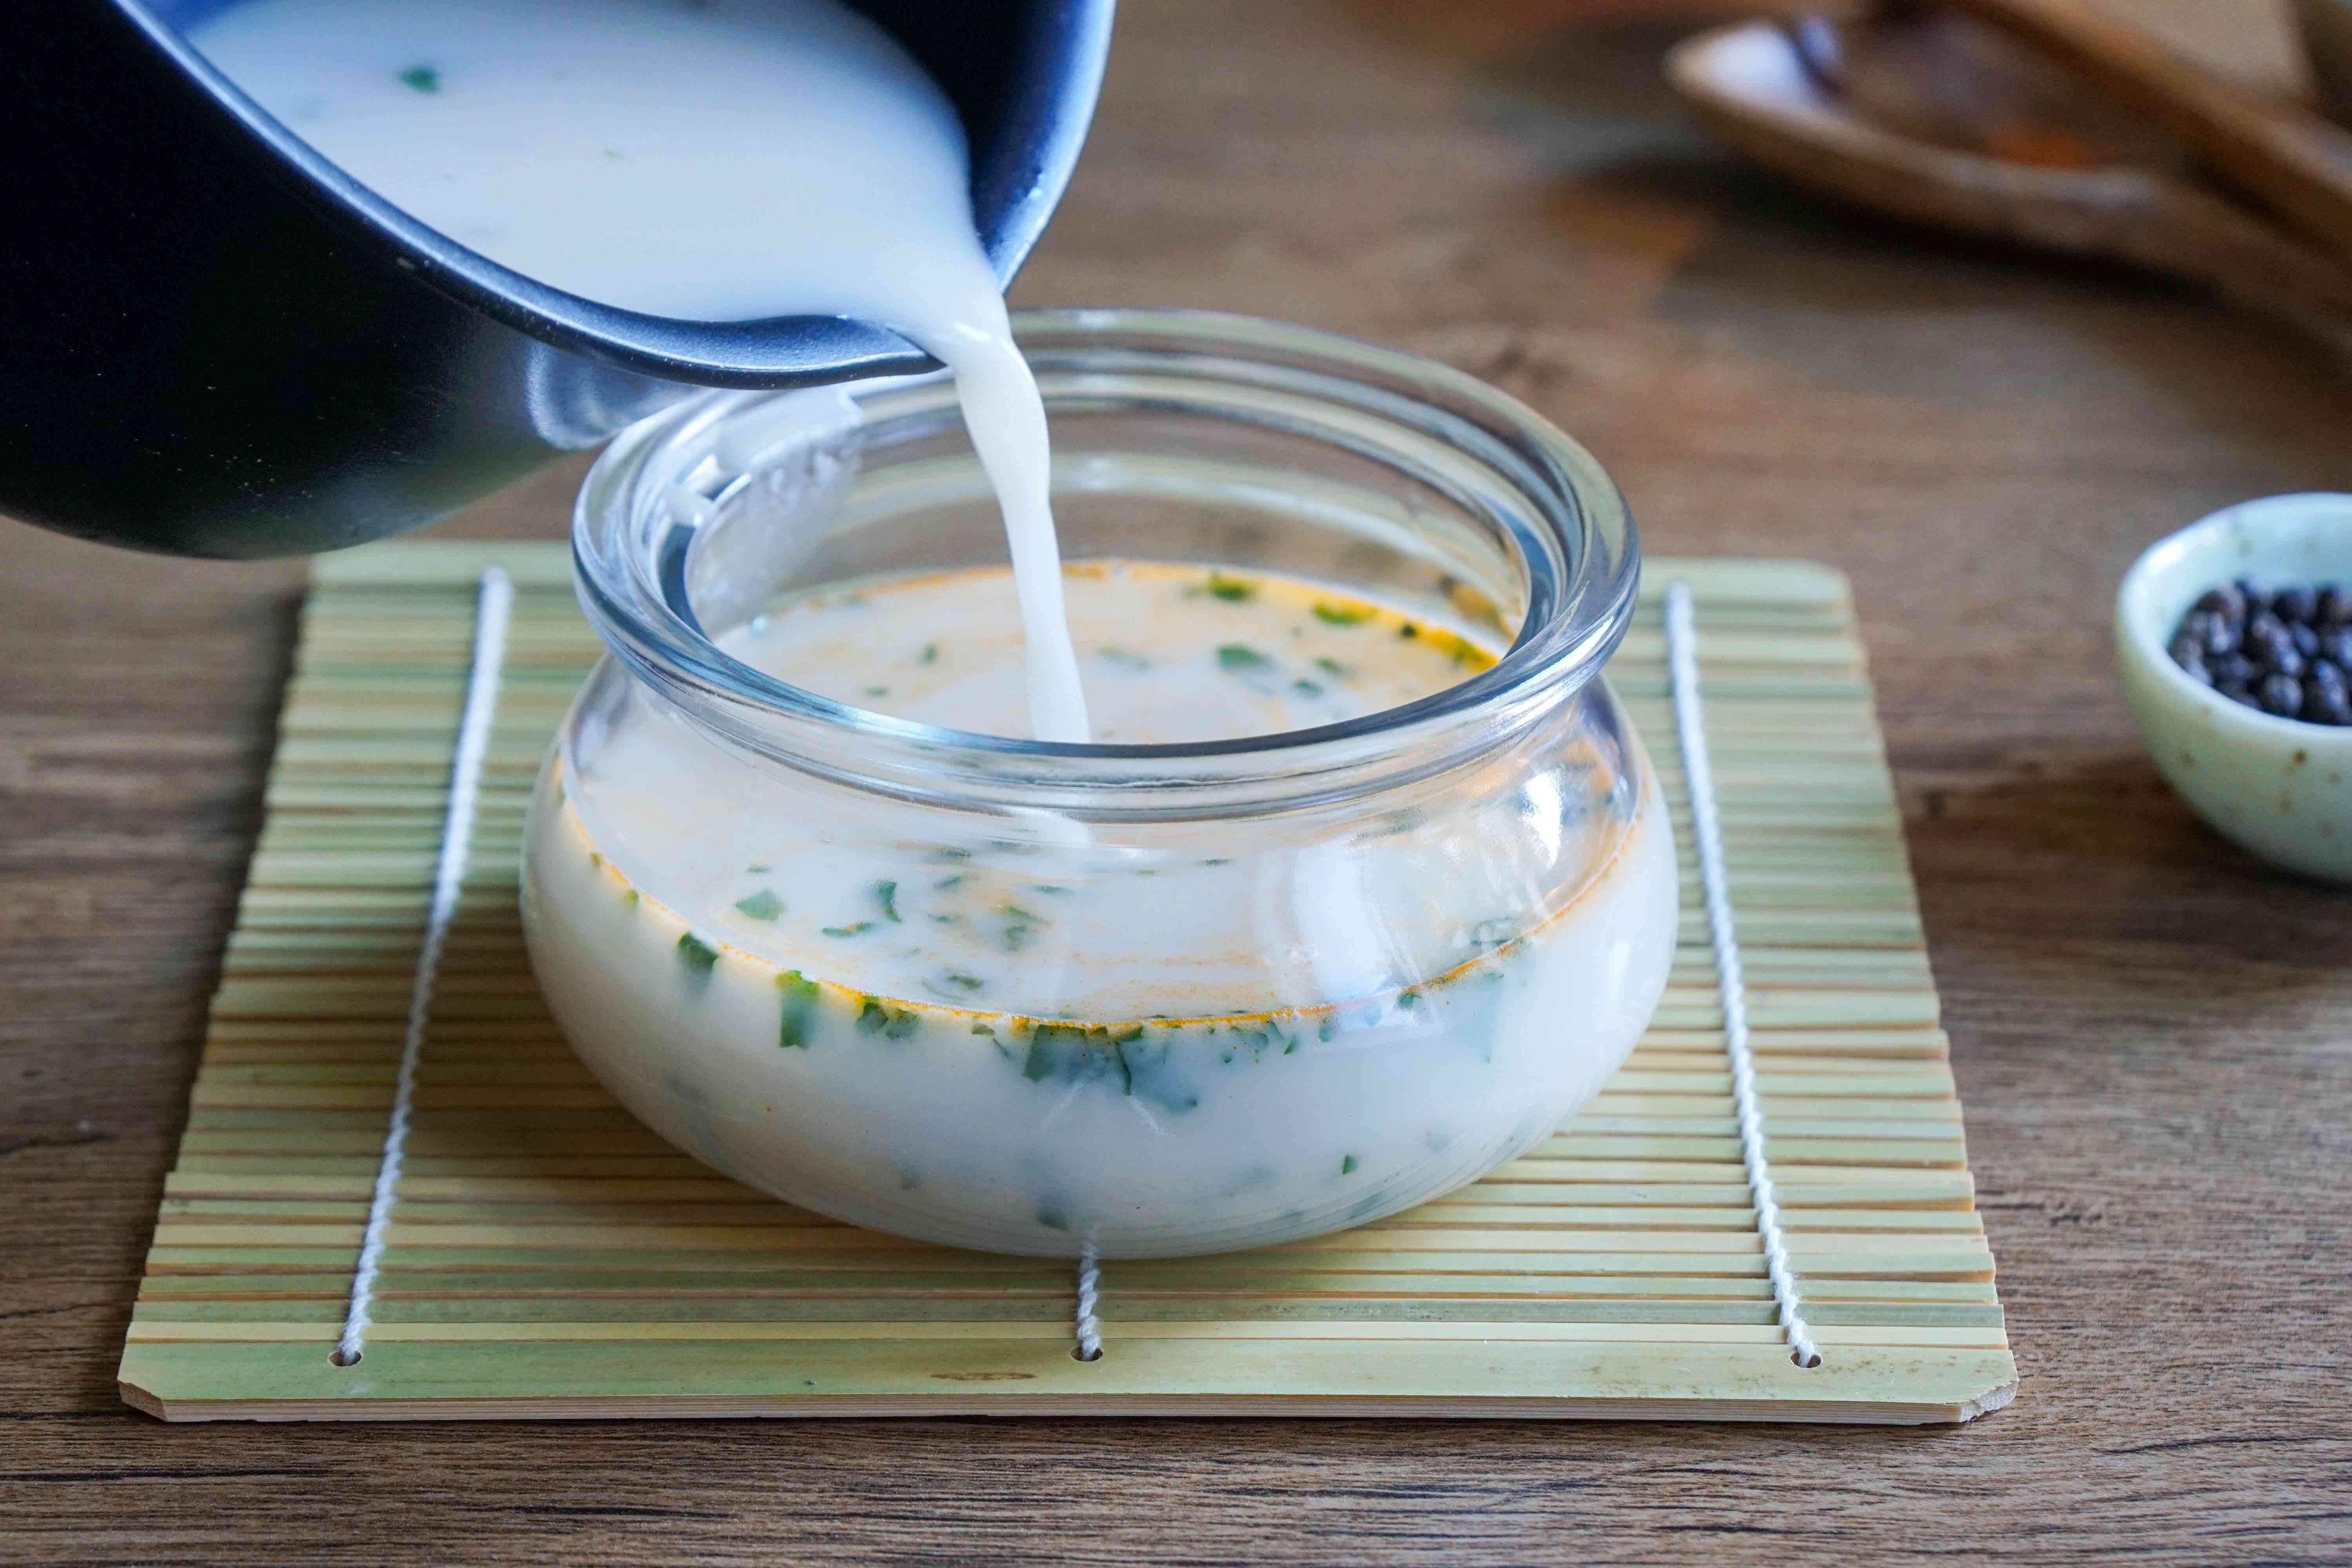 乳汤从平底锅倒入玻璃罐中，放在竹席上